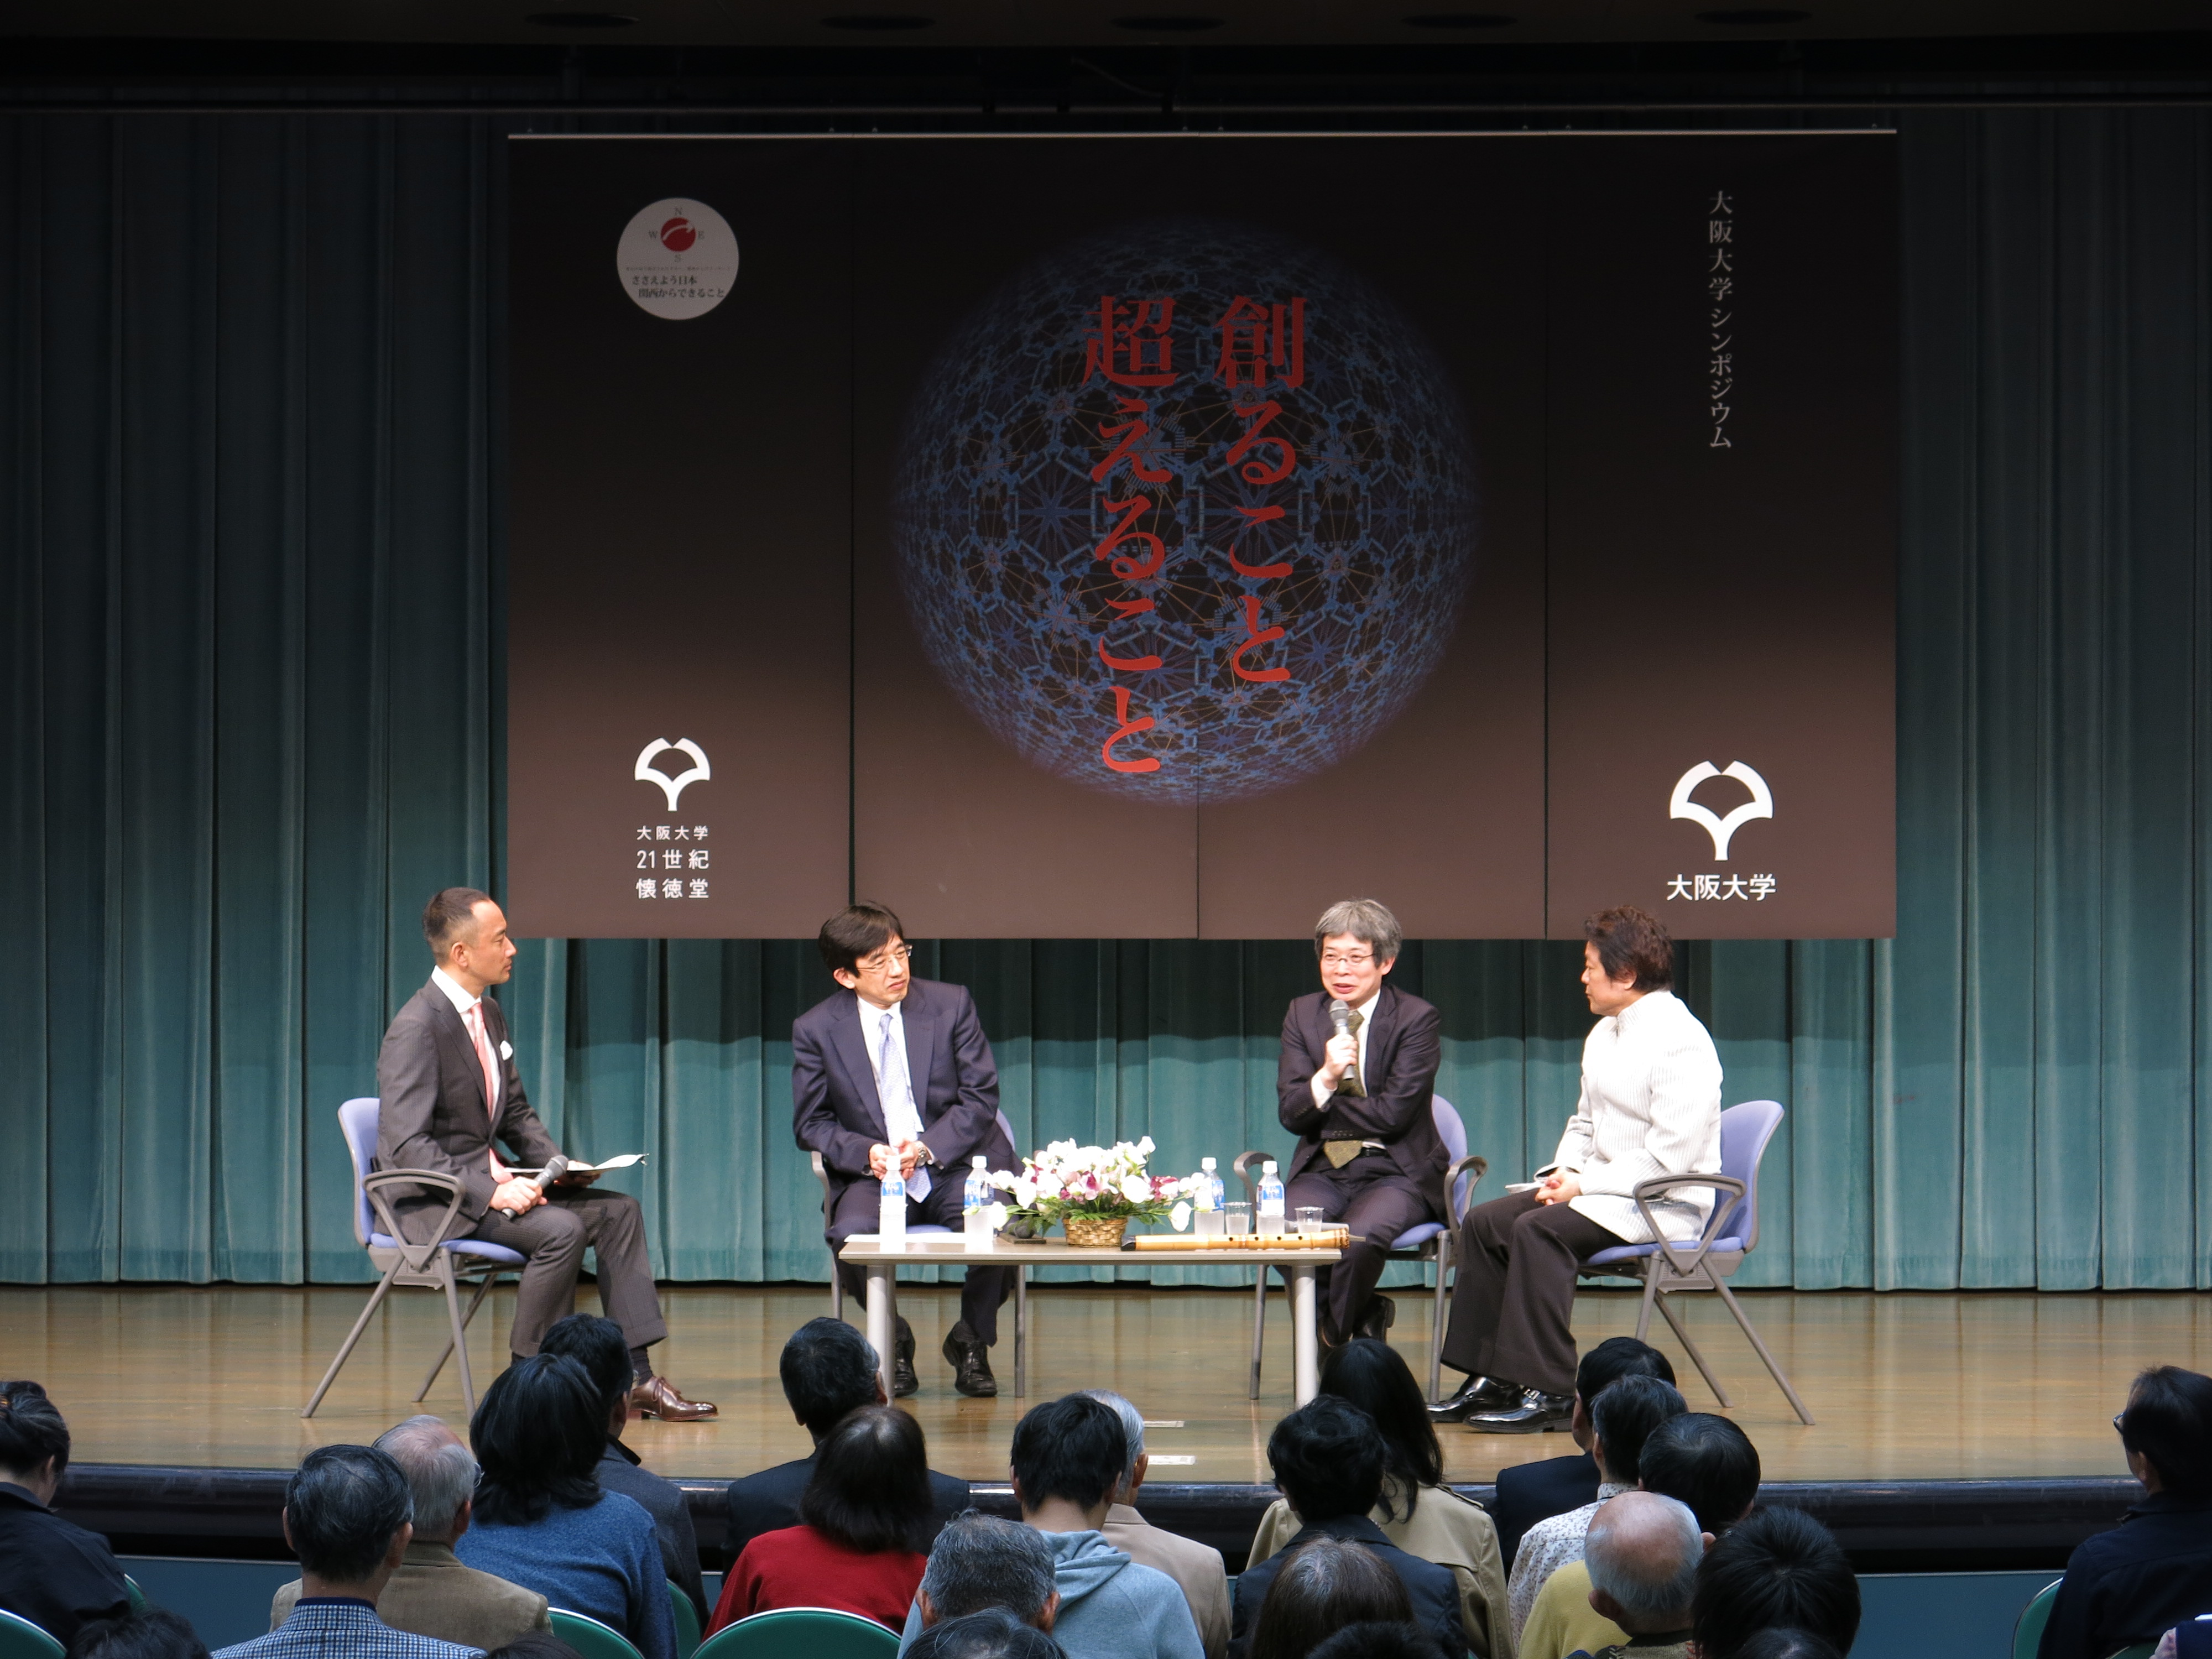 大阪大学シンポジウム「創ること 超えること」を開催しました